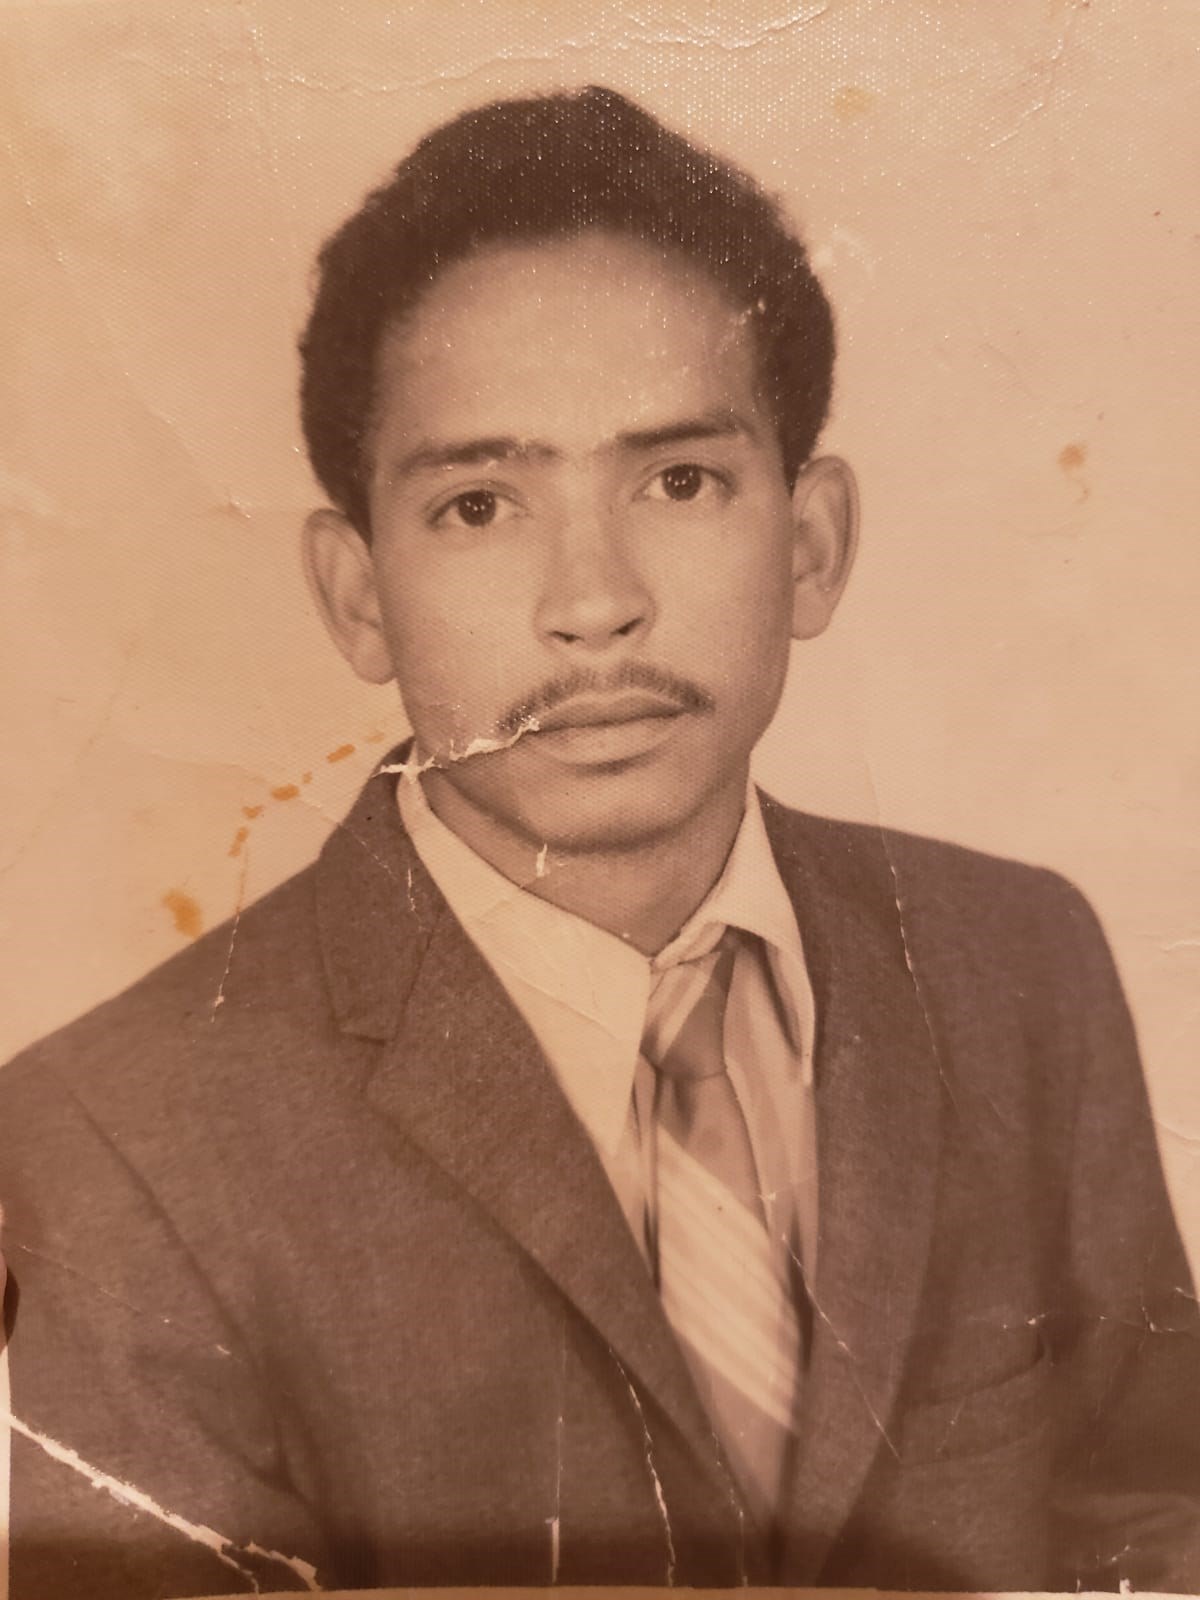 Obituary of Leopoldo Santos - 02/17/2020 - From the Family